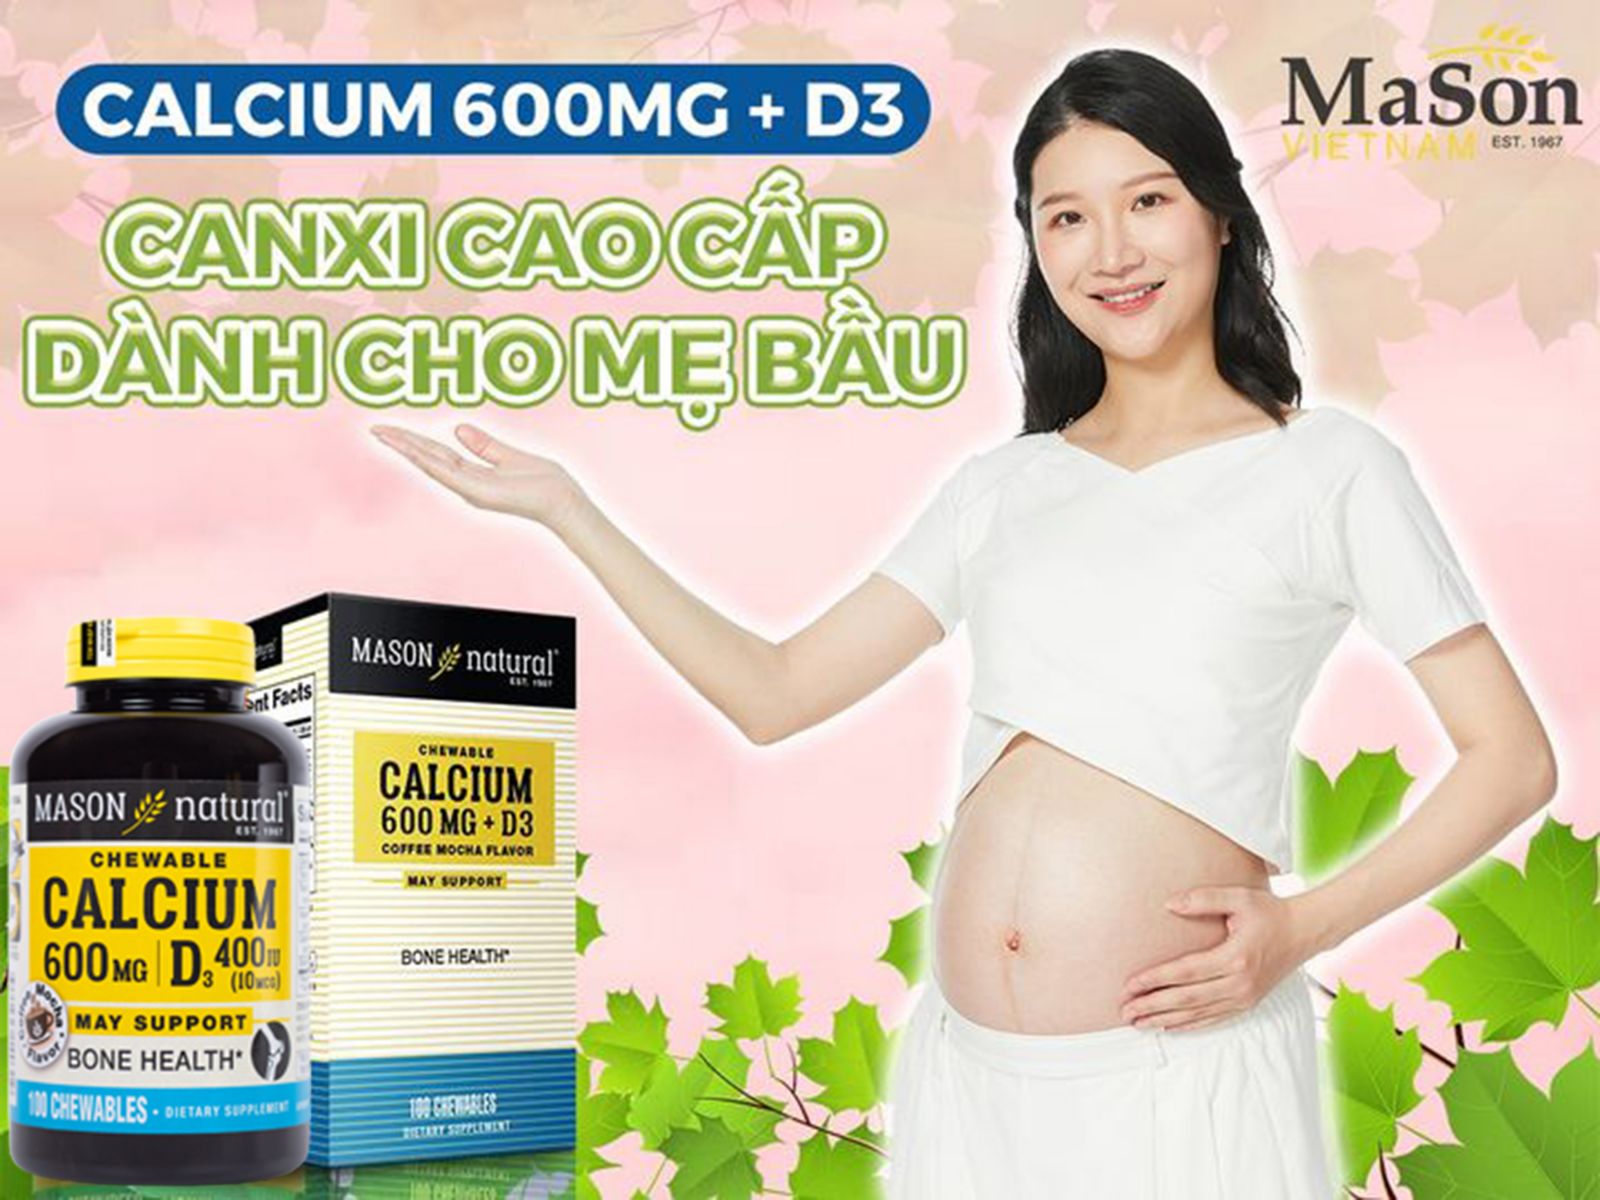 Calcium 600mg + D3 của thương hiệu MASON cho thai kỳ khỏe mạnh